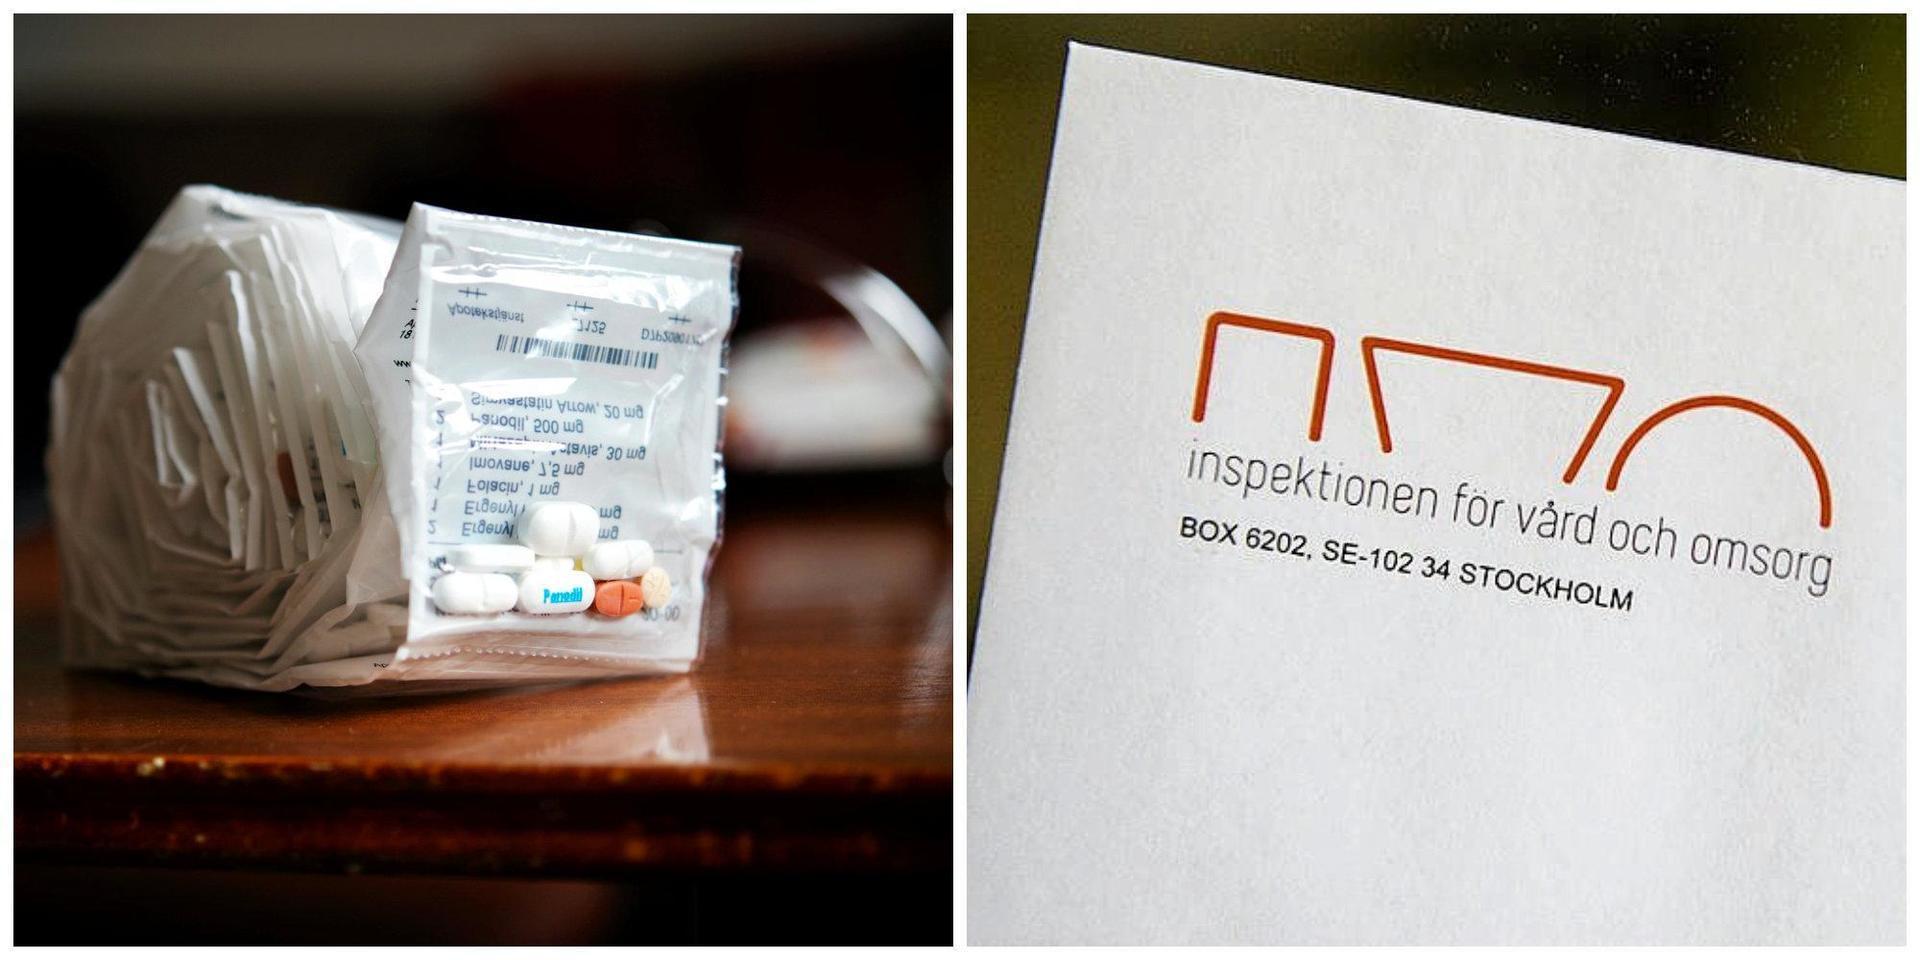 Narkotikaklassade läkemedel byttes ut mot receptfria tabletter, vilket innebar att brukaren inte fick den medicin hen ordinerats. Händelsen är nu anmäld till Ivo.